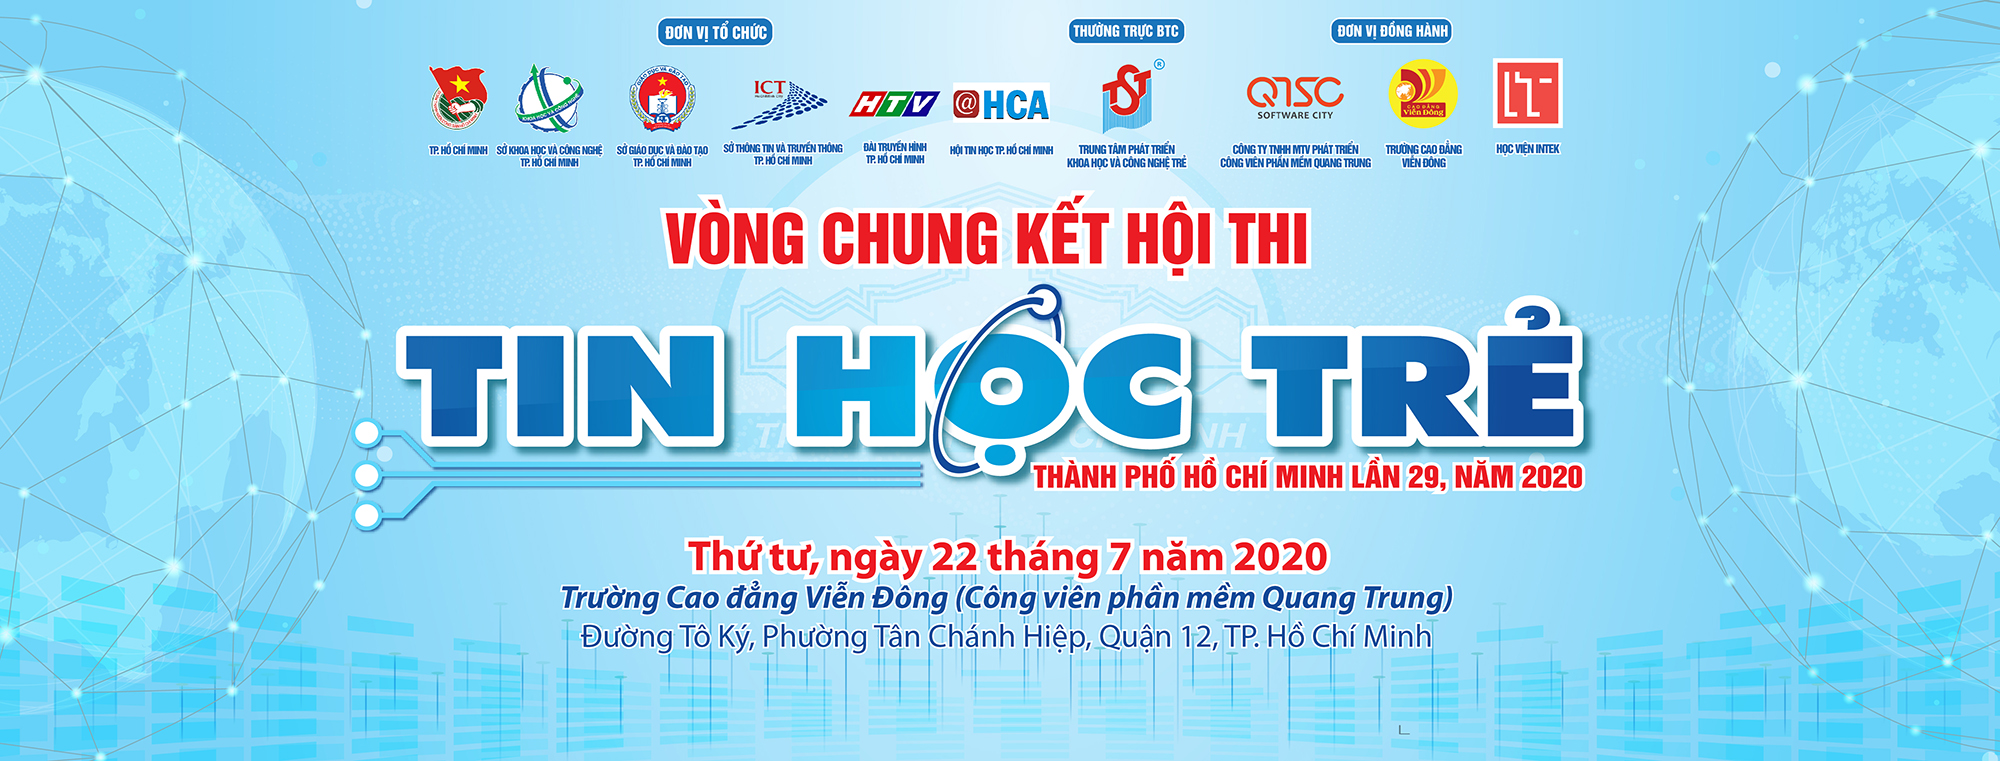 Vòng chung kết Hội thi Tin học trẻ TP. Hồ Chí Minh lần 29 năm 2020